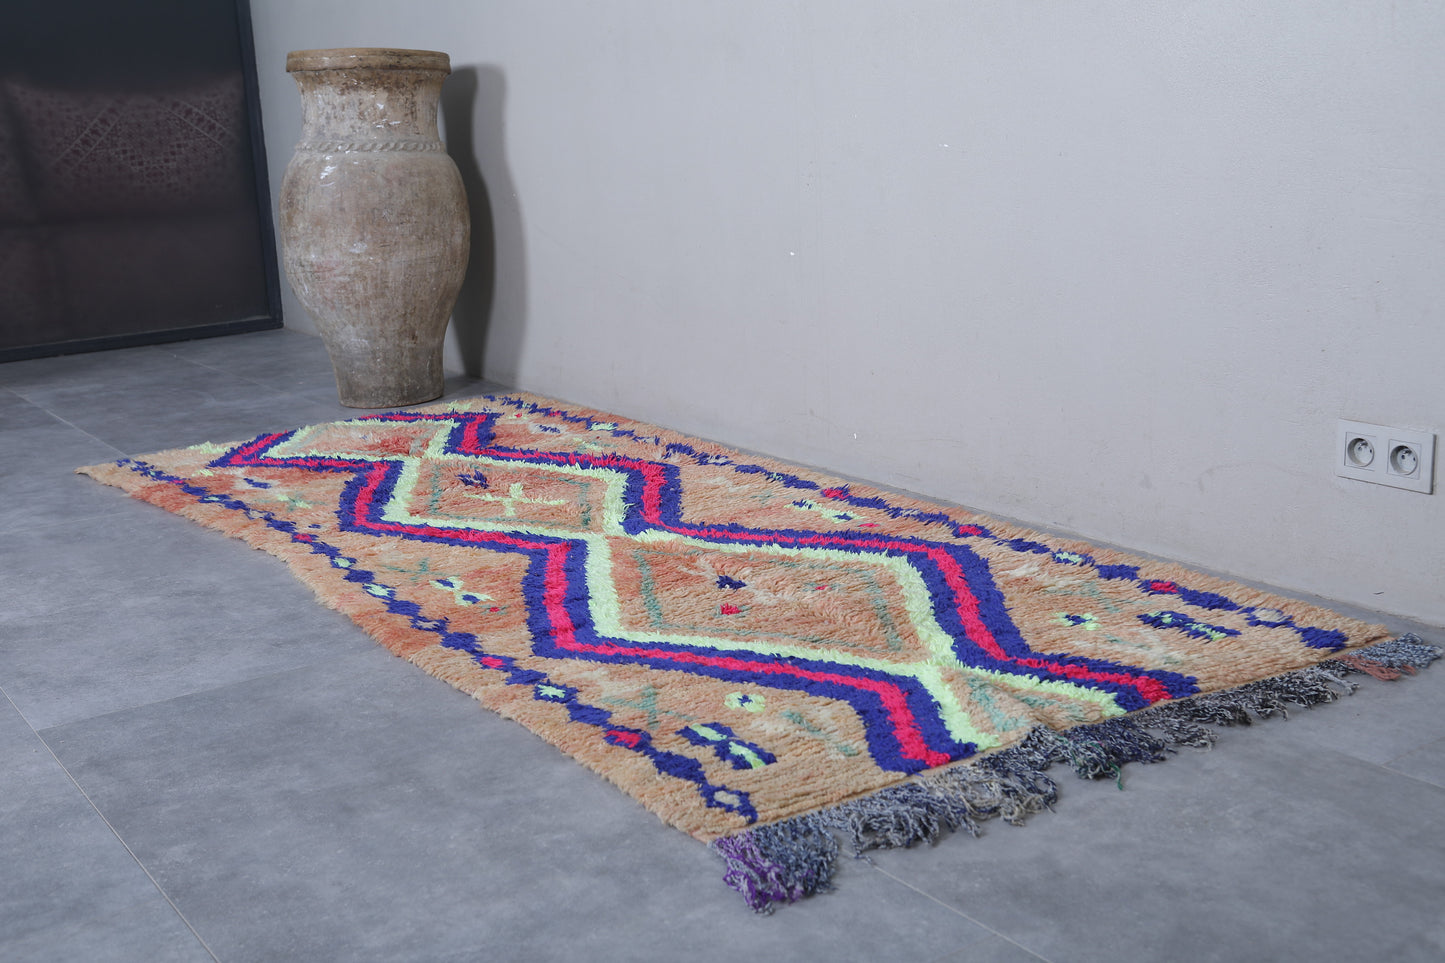 Moroccan rug 3.6 X 8.5 Feet